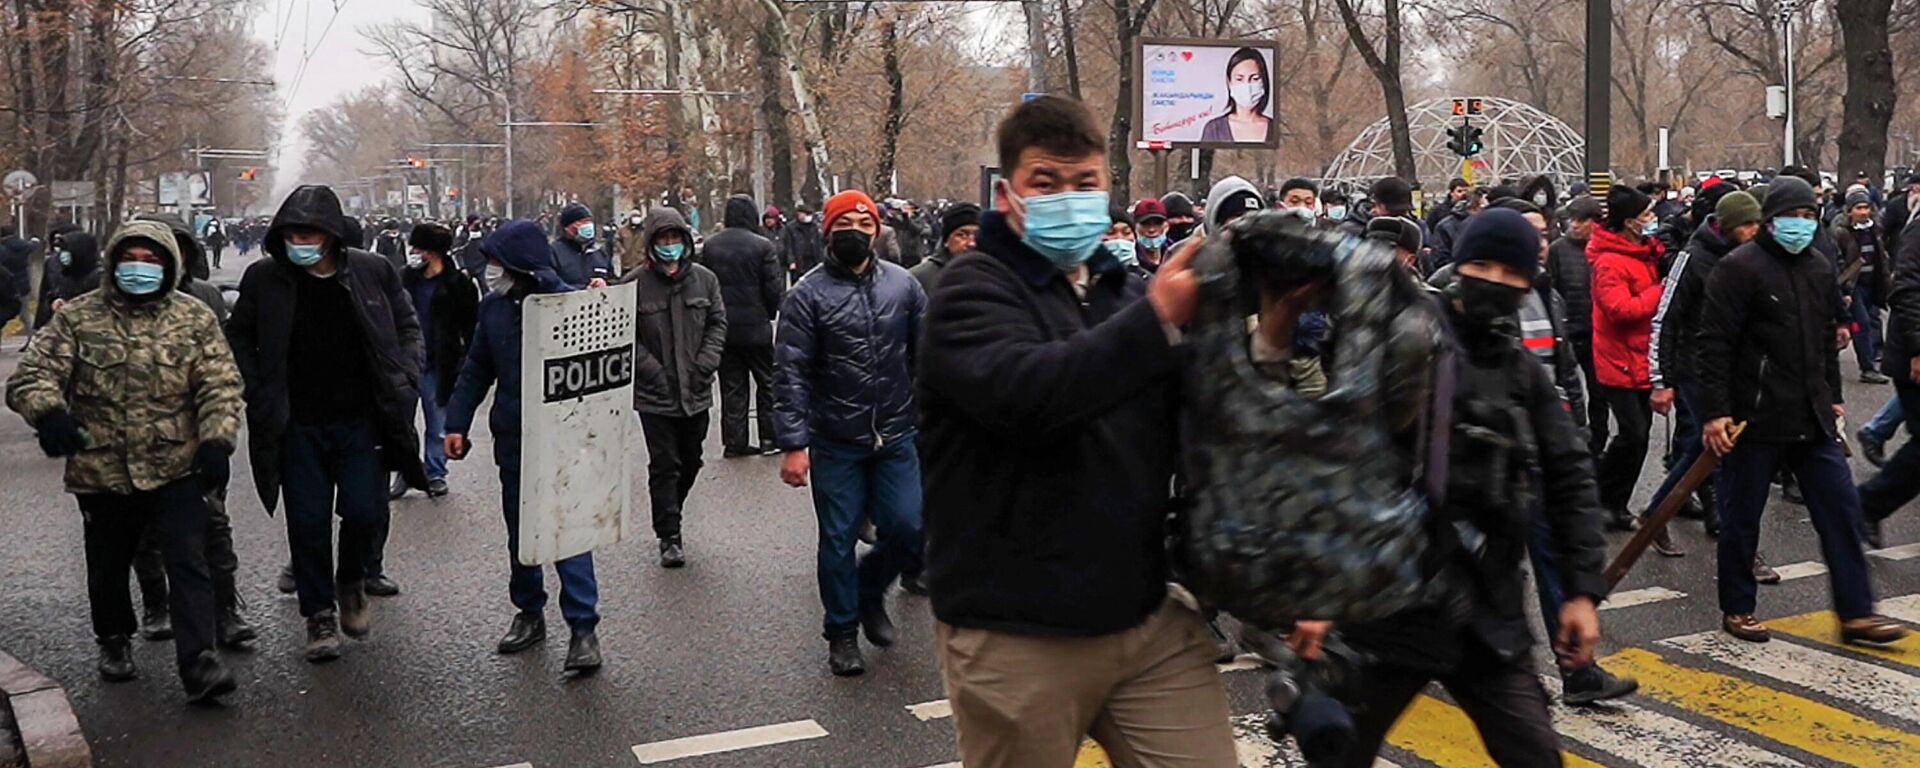 Протестующие на улицах Алматы во время беспорядков. Архивное фото - Sputnik Кыргызстан, 1920, 09.02.2022